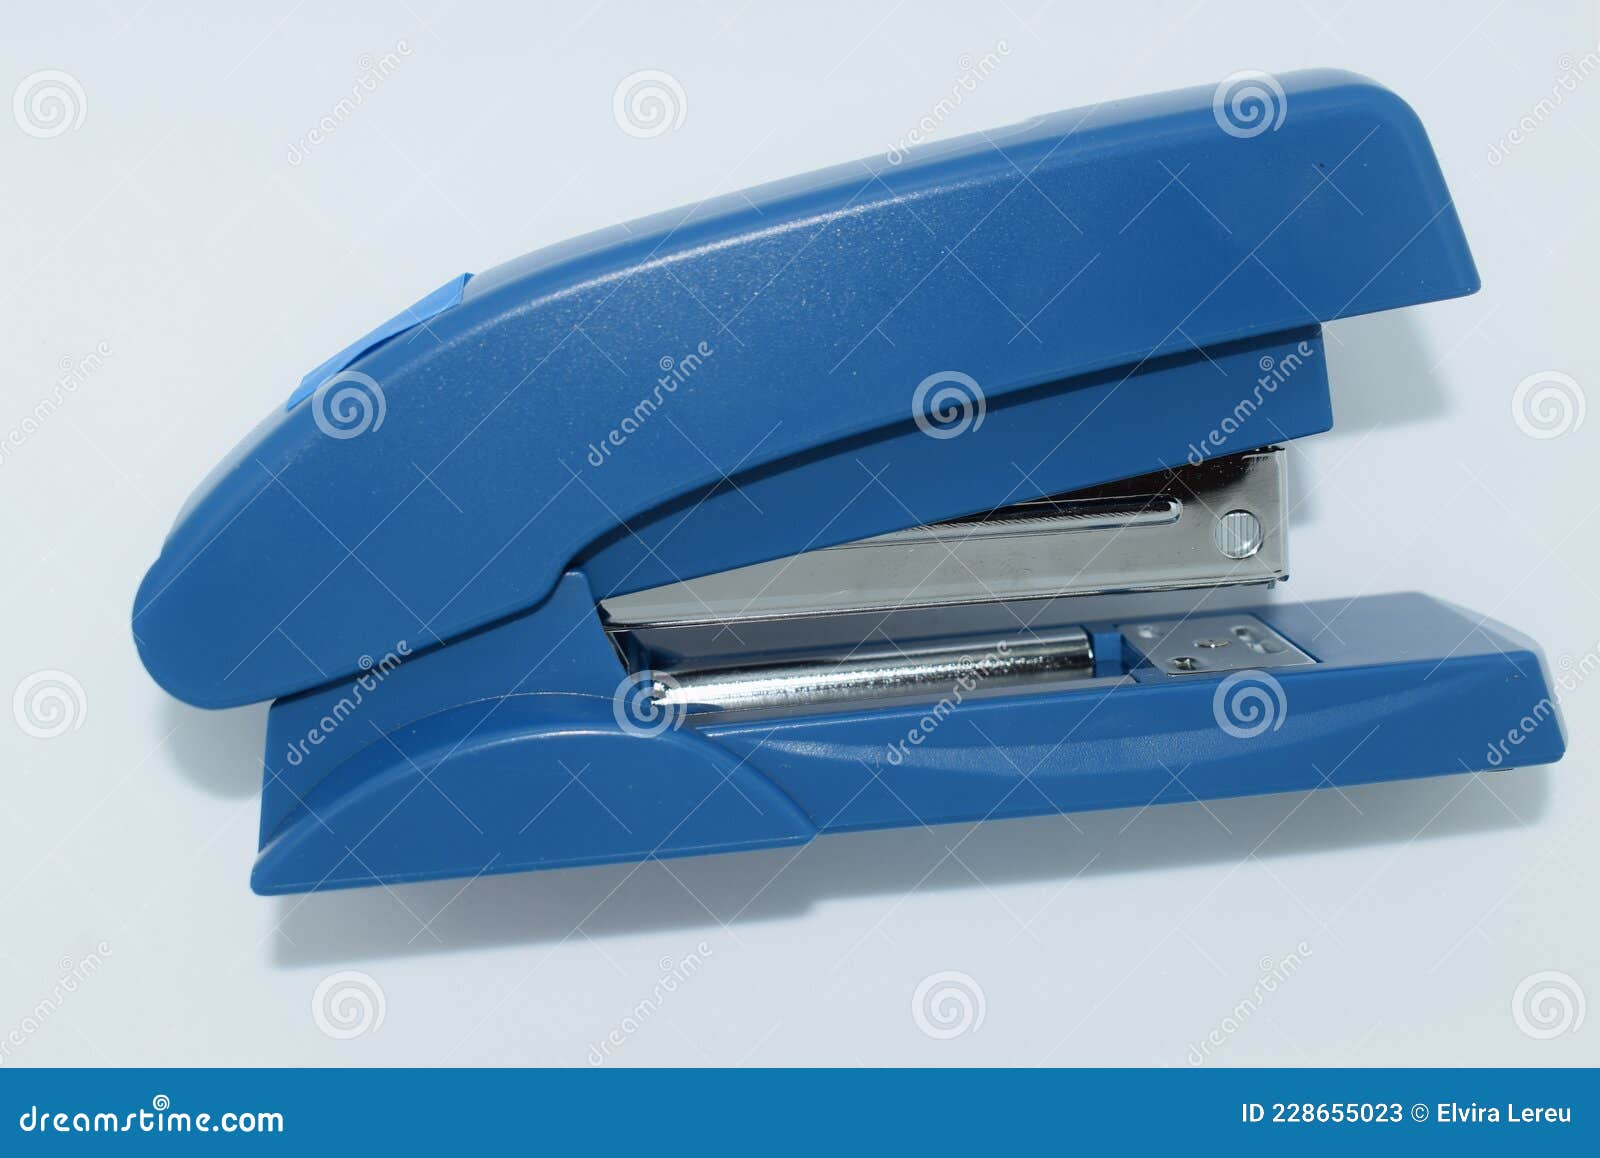 Grapador De Oficina En Material De Trabajo Color Azul de archivo - Imagen de herramienta, aplanamiento: 228655023